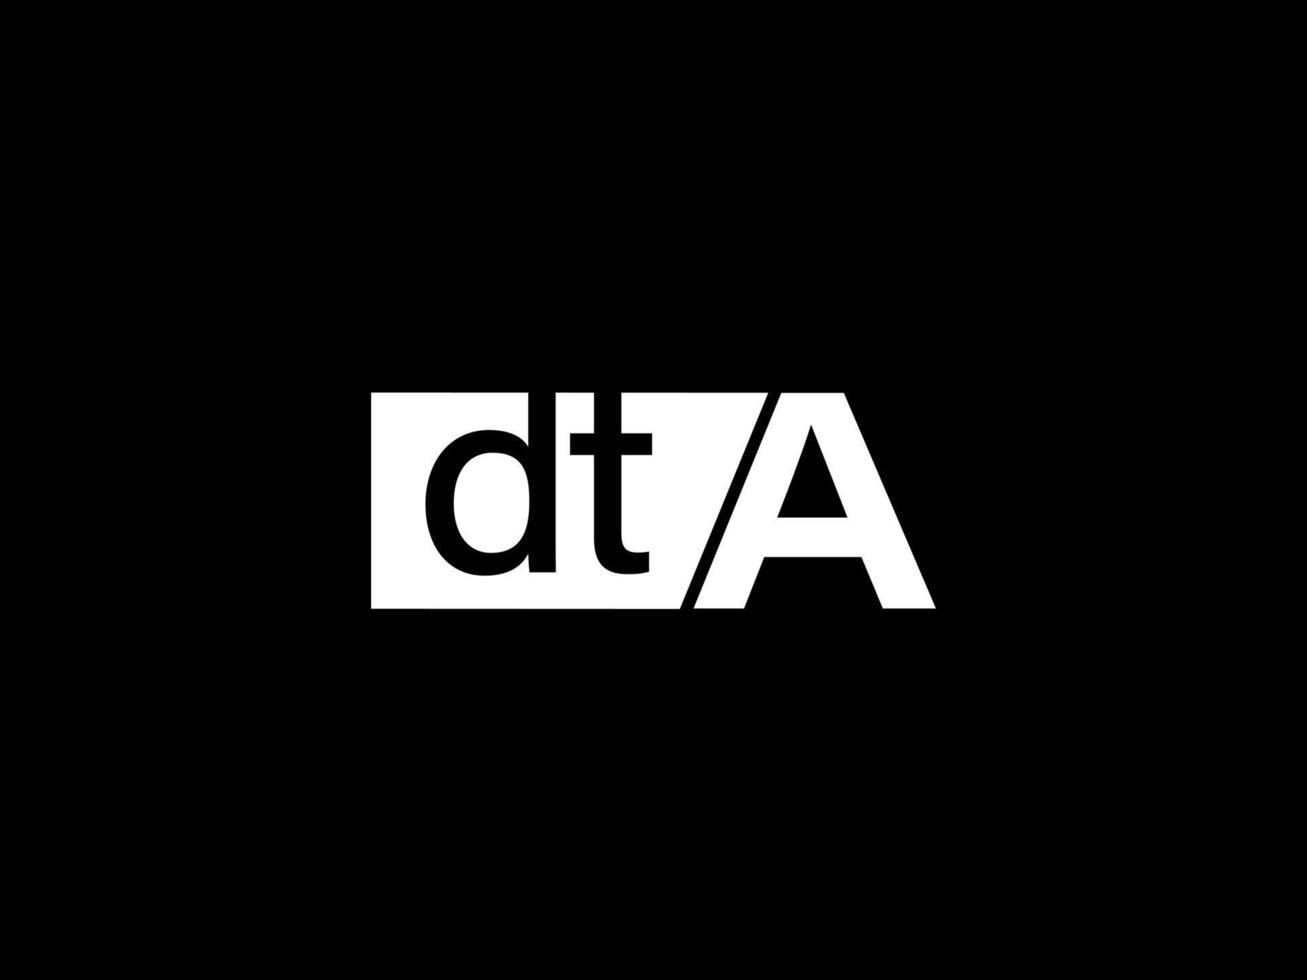 dta-Logo und Grafikdesign Vektorgrafiken, Symbole isoliert auf schwarzem Hintergrund vektor